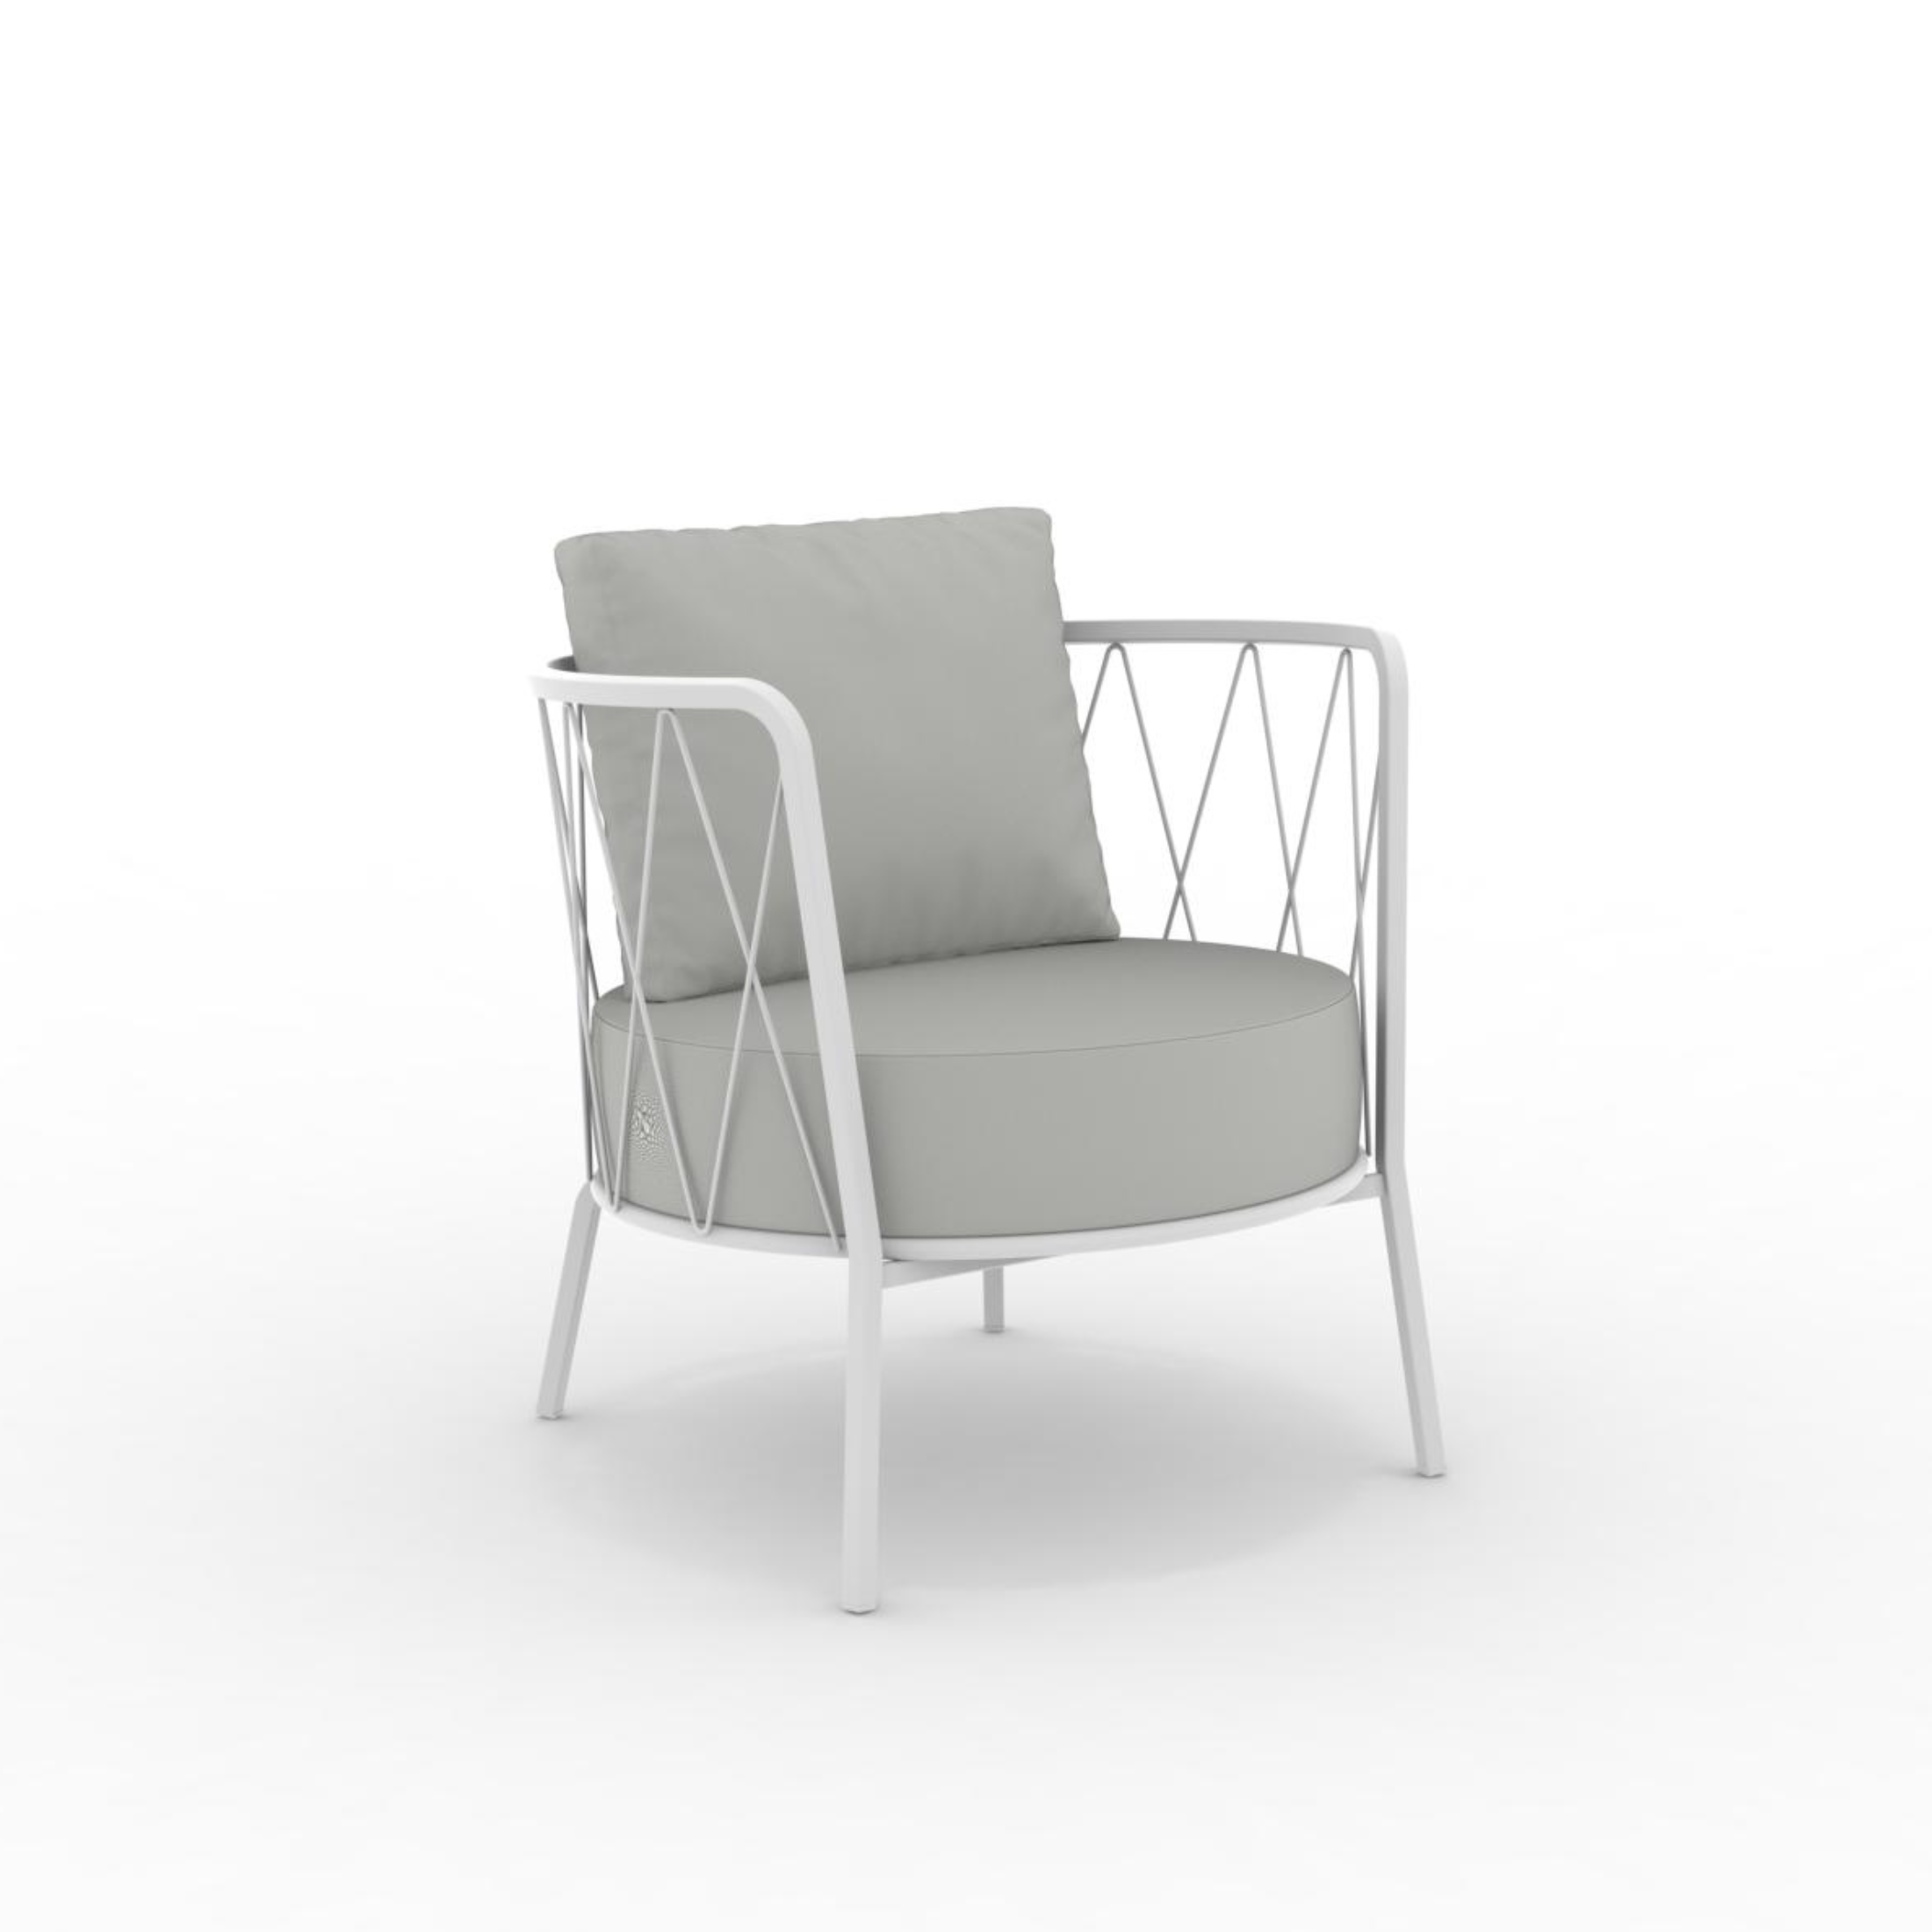 Sillón bajo de metal galvanizado "Daisy12" sillón de jardín 73x73 cm 71h